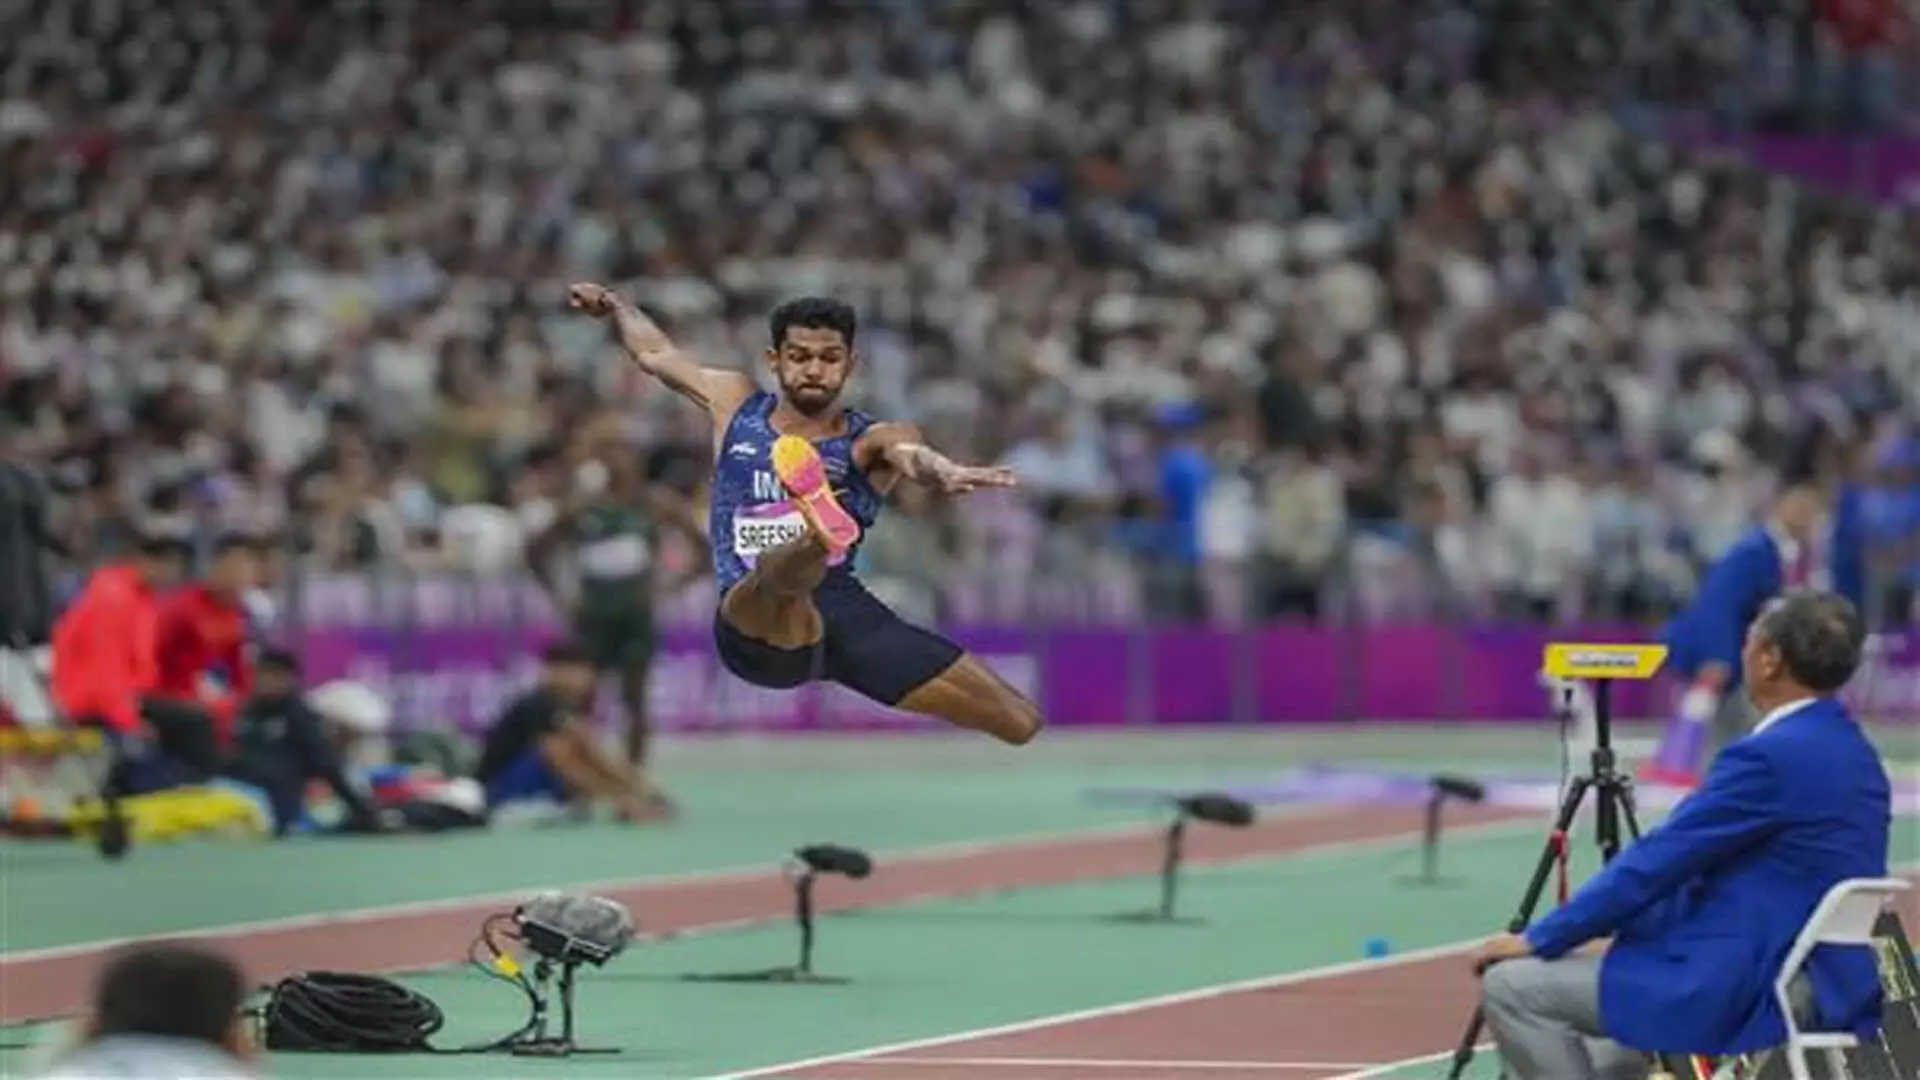 घुटने की चोट के कारण सर्जरी कराने के लिए मुरली श्रीशंकर पेरिस ओलंपिक से बाहर हो गए